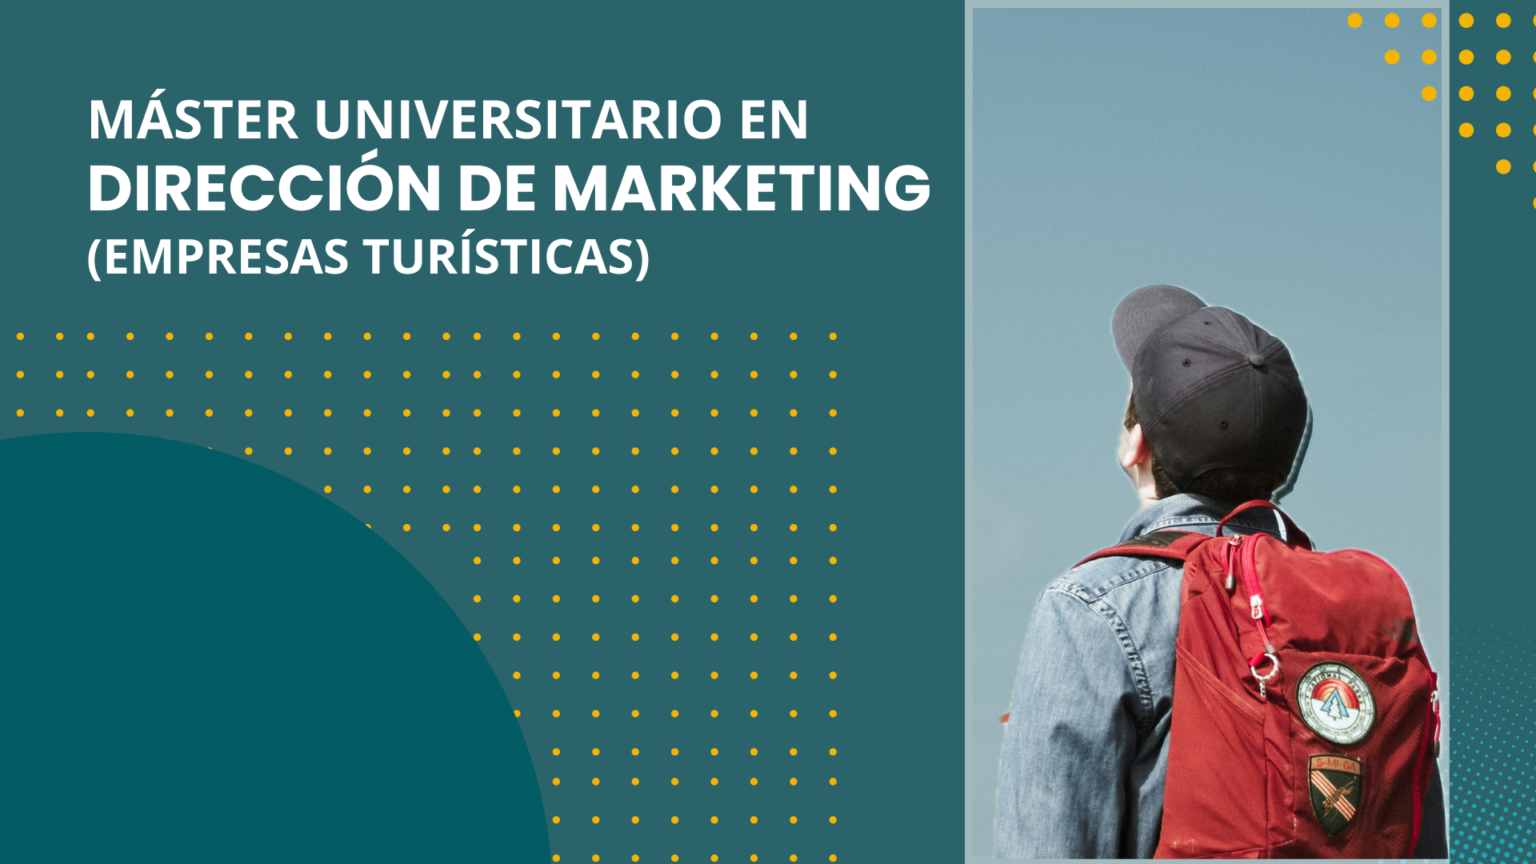 1ª Imagen portada de la pagina que incluye el titulo del máster "Máster universitario en dirección de marketing (empresas turísticas)"